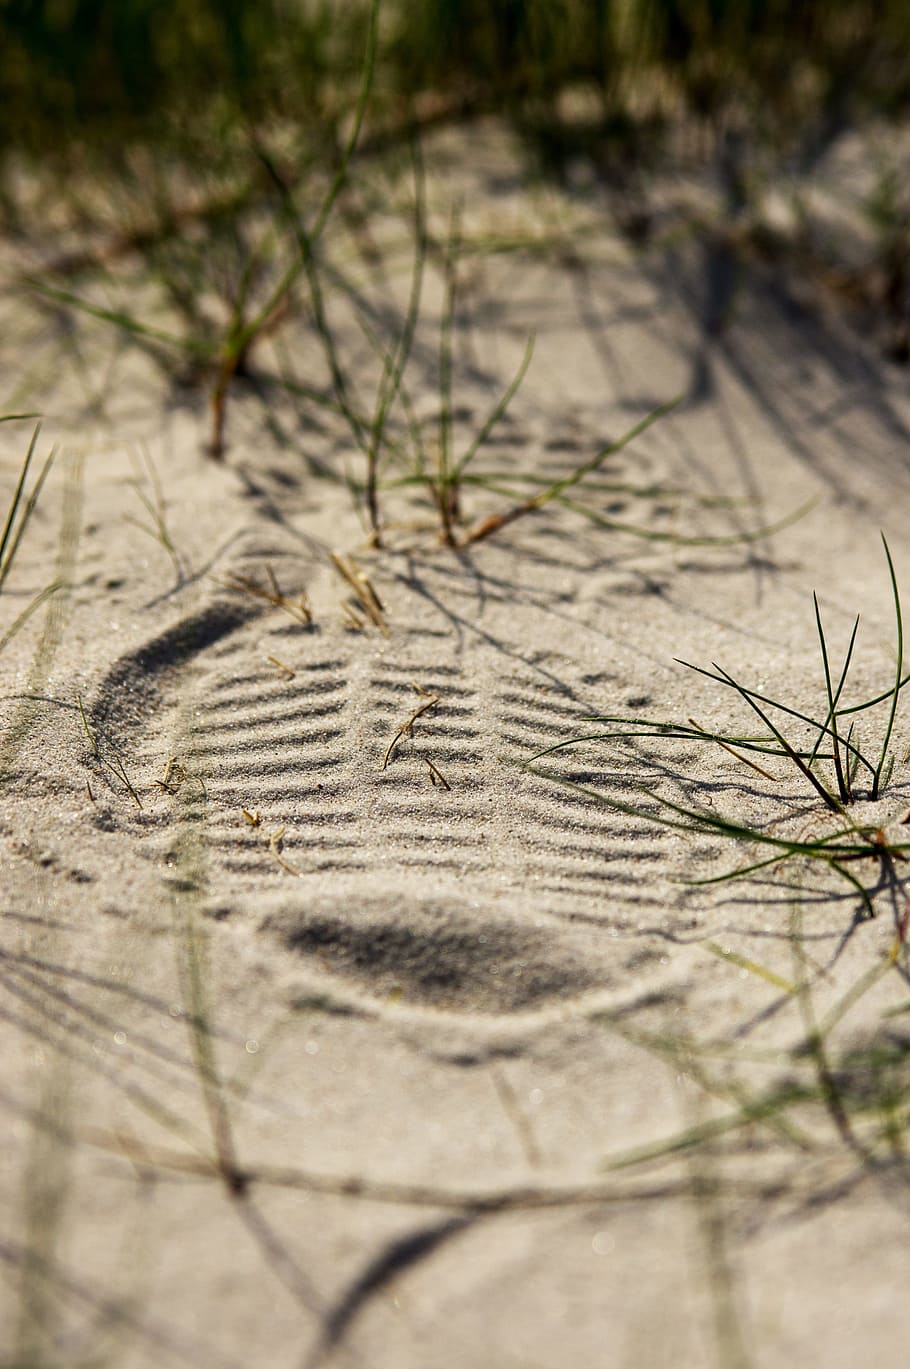 shoe print, sand, grass, reprint, footprint, sand road, shoe sole imprint, close, structure, sole imprint